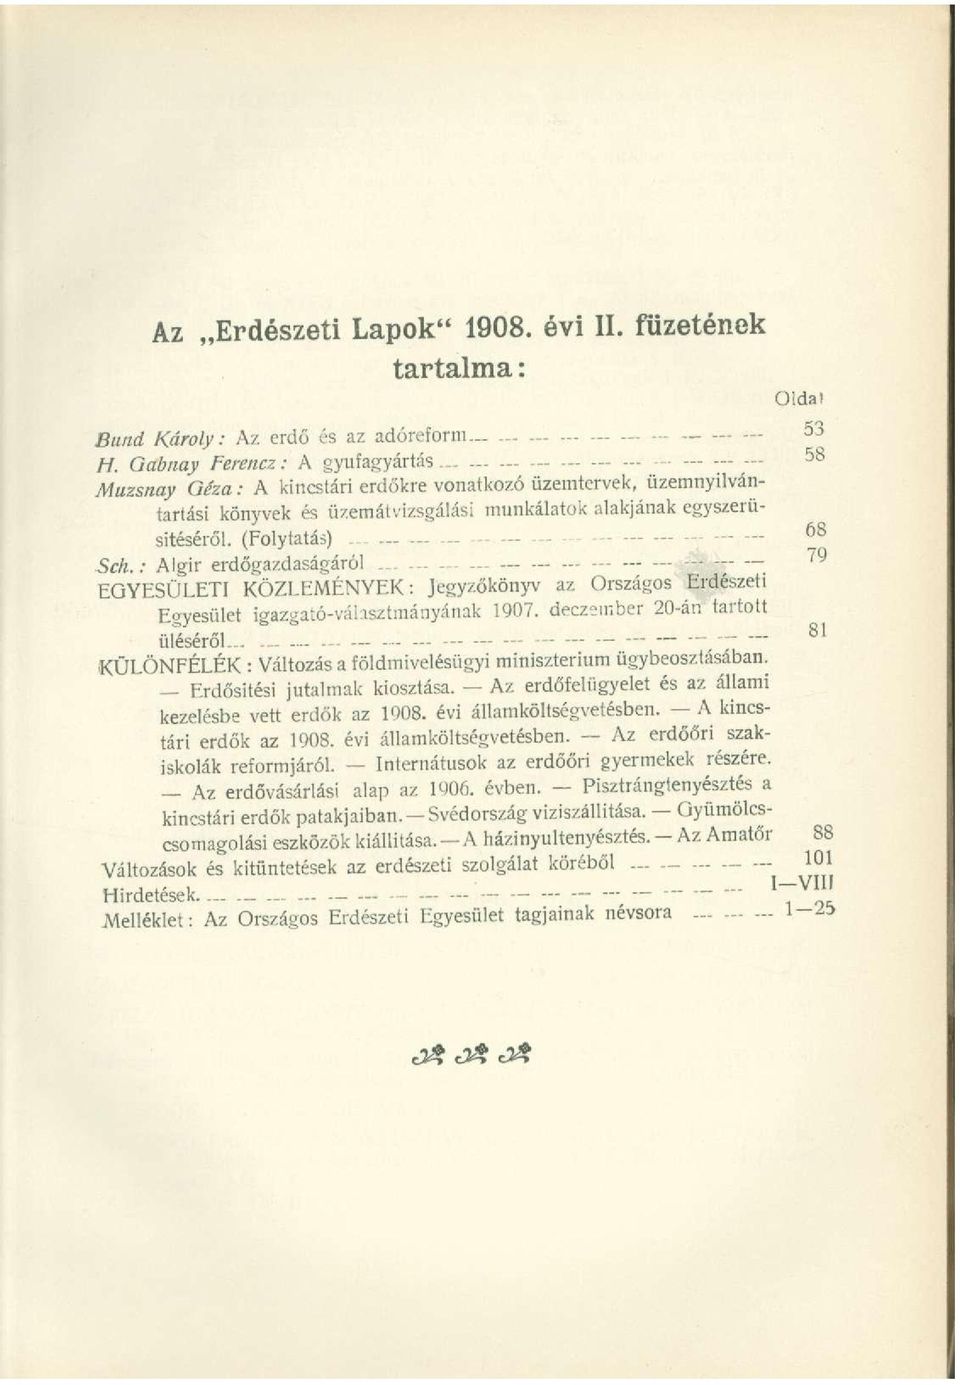 (Folytatás) 68 Sch.: Algir erdőgazdaságáról...... 79 EGYESÜLETI KÖZLEMÉNYEK: Jegyzőkönyv az Országos Erdészeti Egyesület igazgató-váhsztmányának 1907. deczember 20-án tartott üléséről.